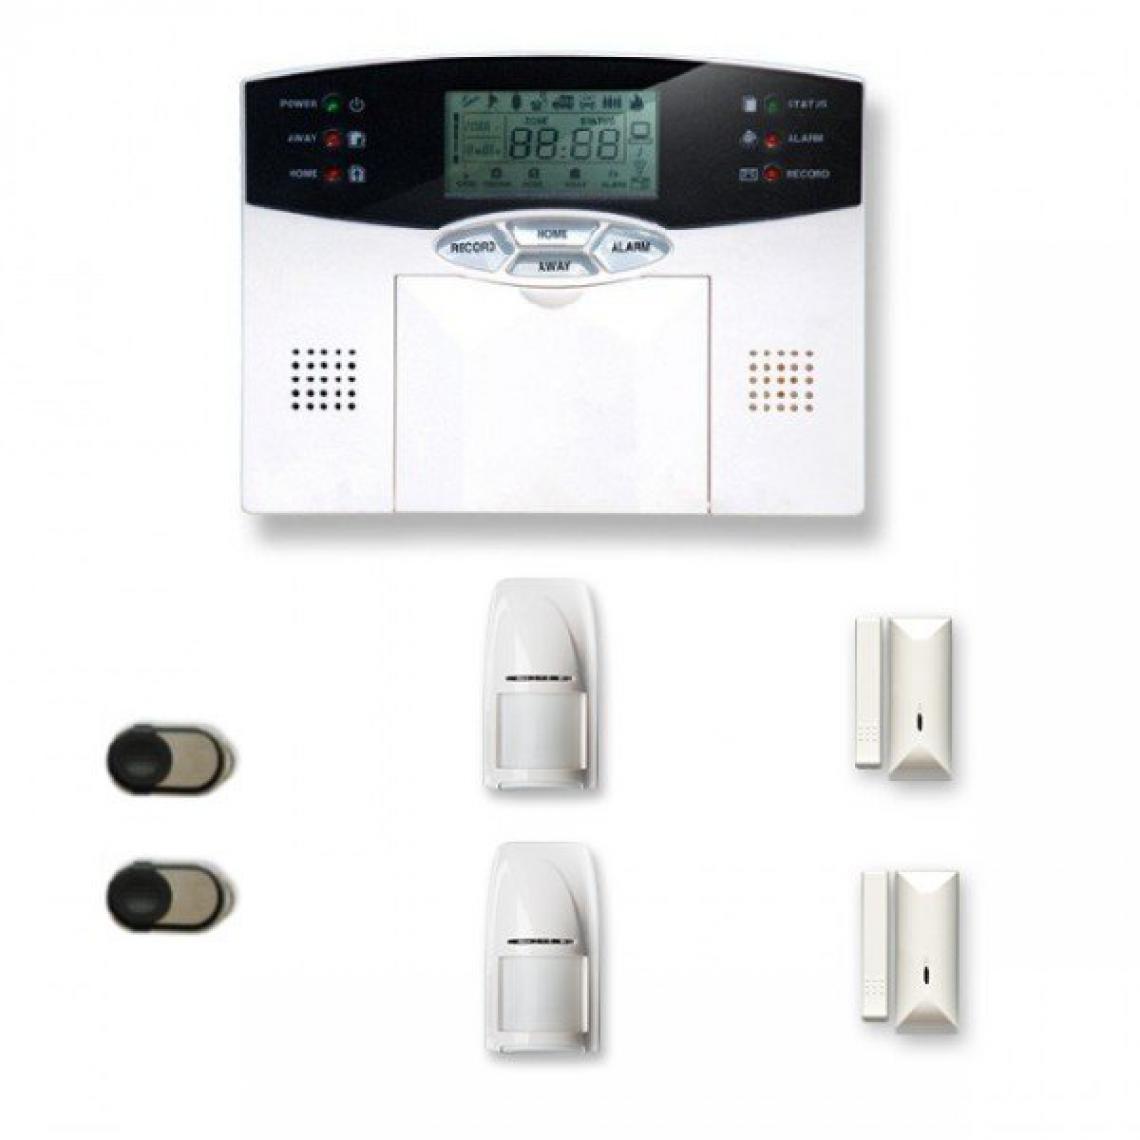 Tike Securite - Alarme maison sans fil MN20 Compatible Box internet - Alarme connectée